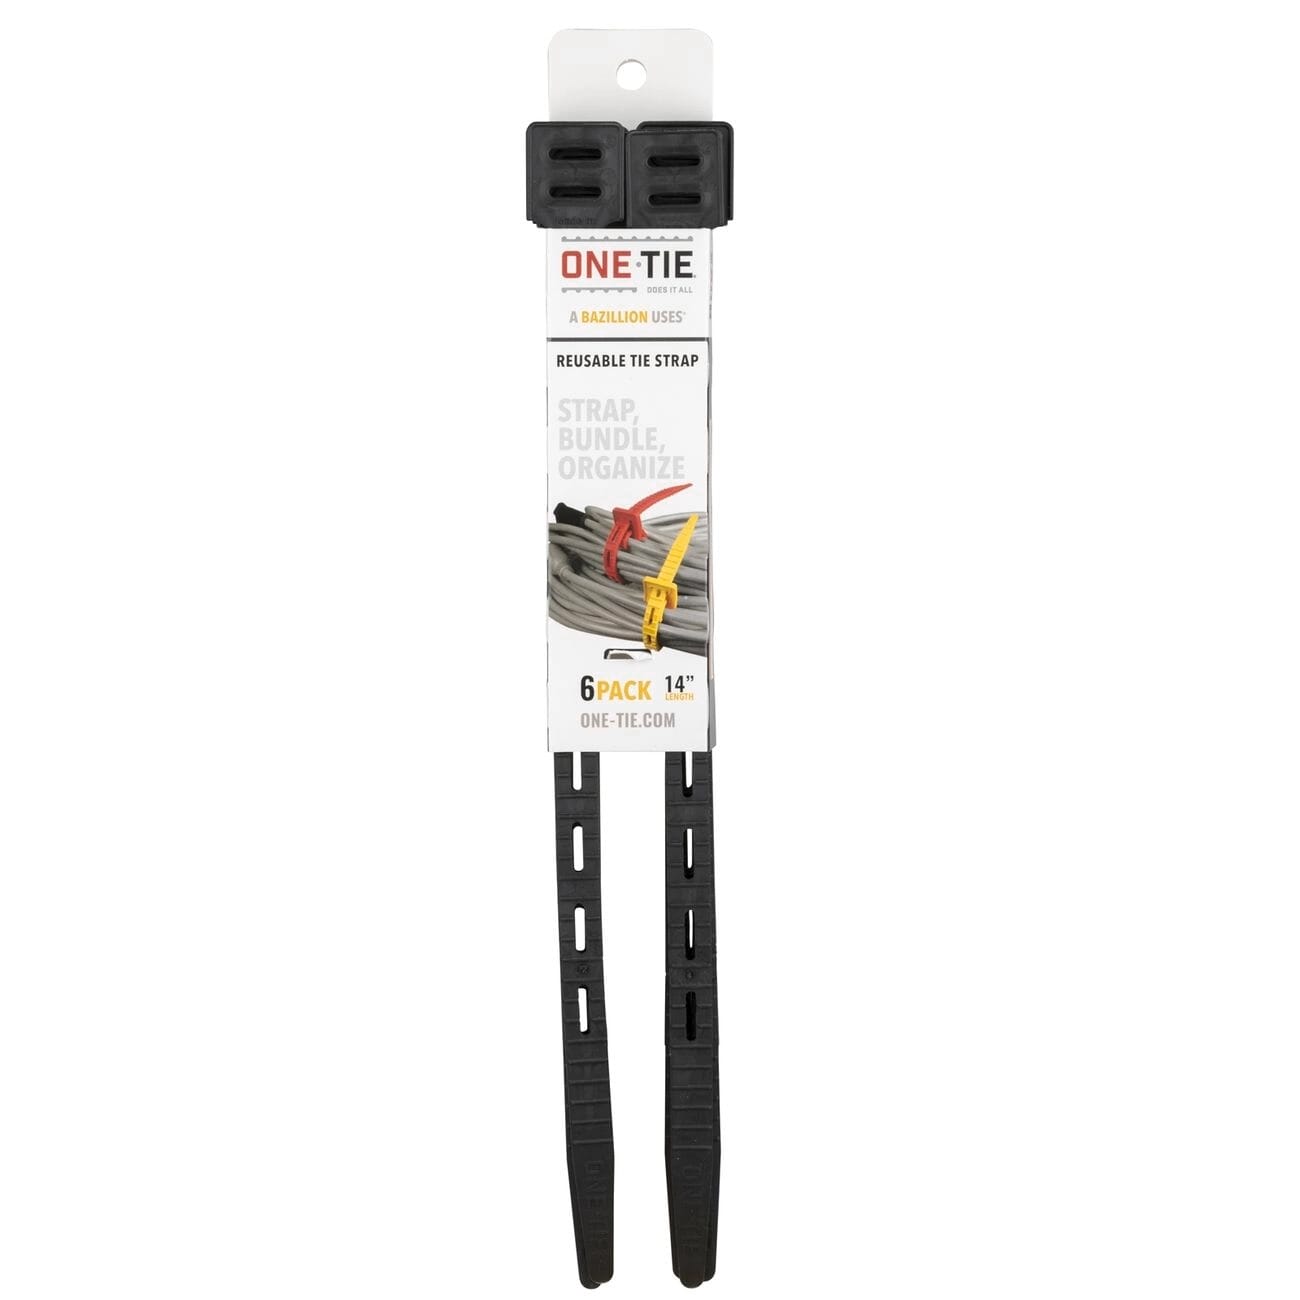 Earls One Tie - Reusable Tie Strap - Black 14" - 6 Pack